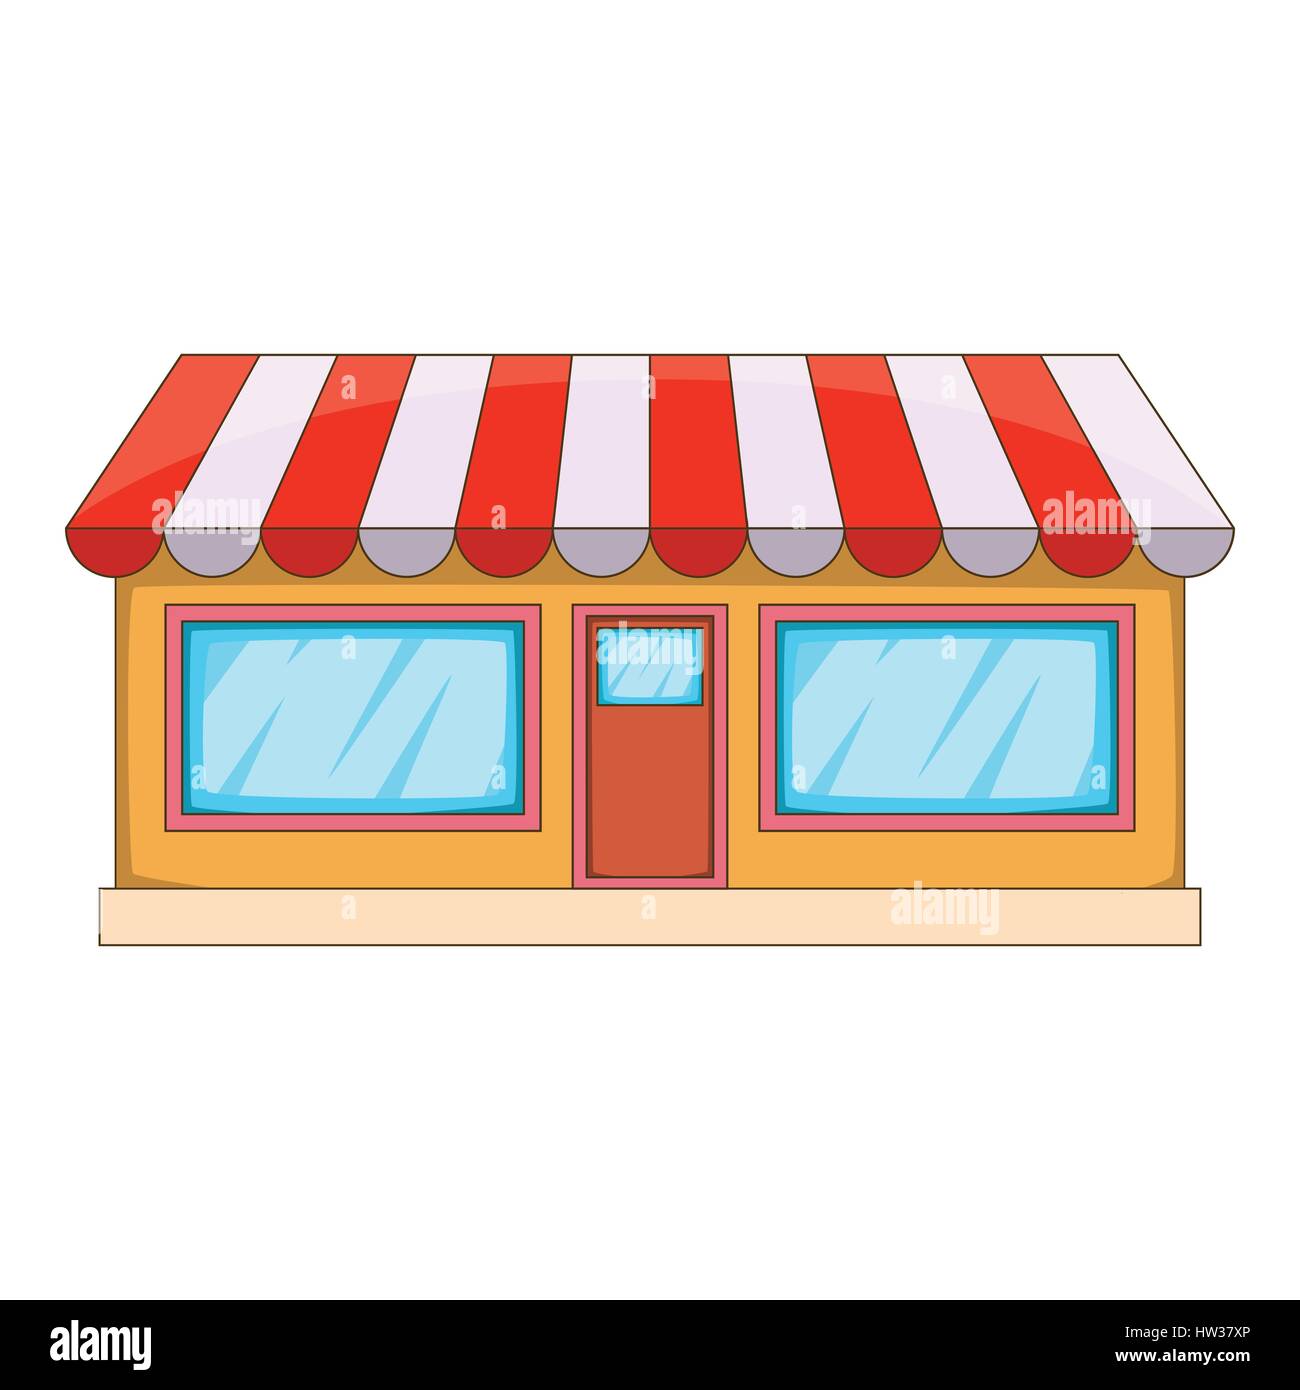 Shop icon, cartoon style Stock Vector